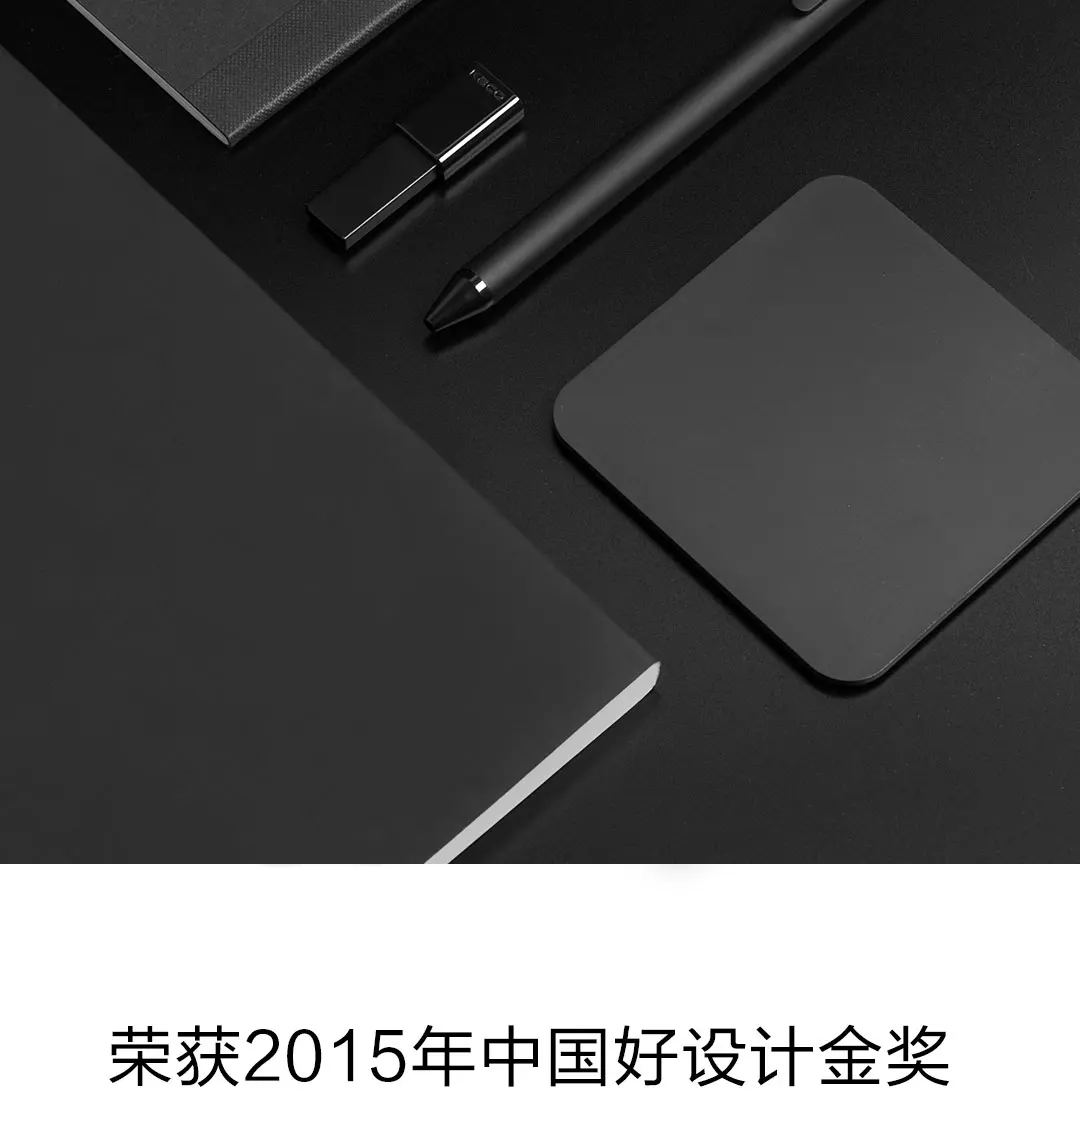 Гелевая ручка Xiaomi KACO 0,5 мм черный и синий цвет черный заправка чернил ABS пластиковая ручка длина 400 мм плавно пишите для студентов